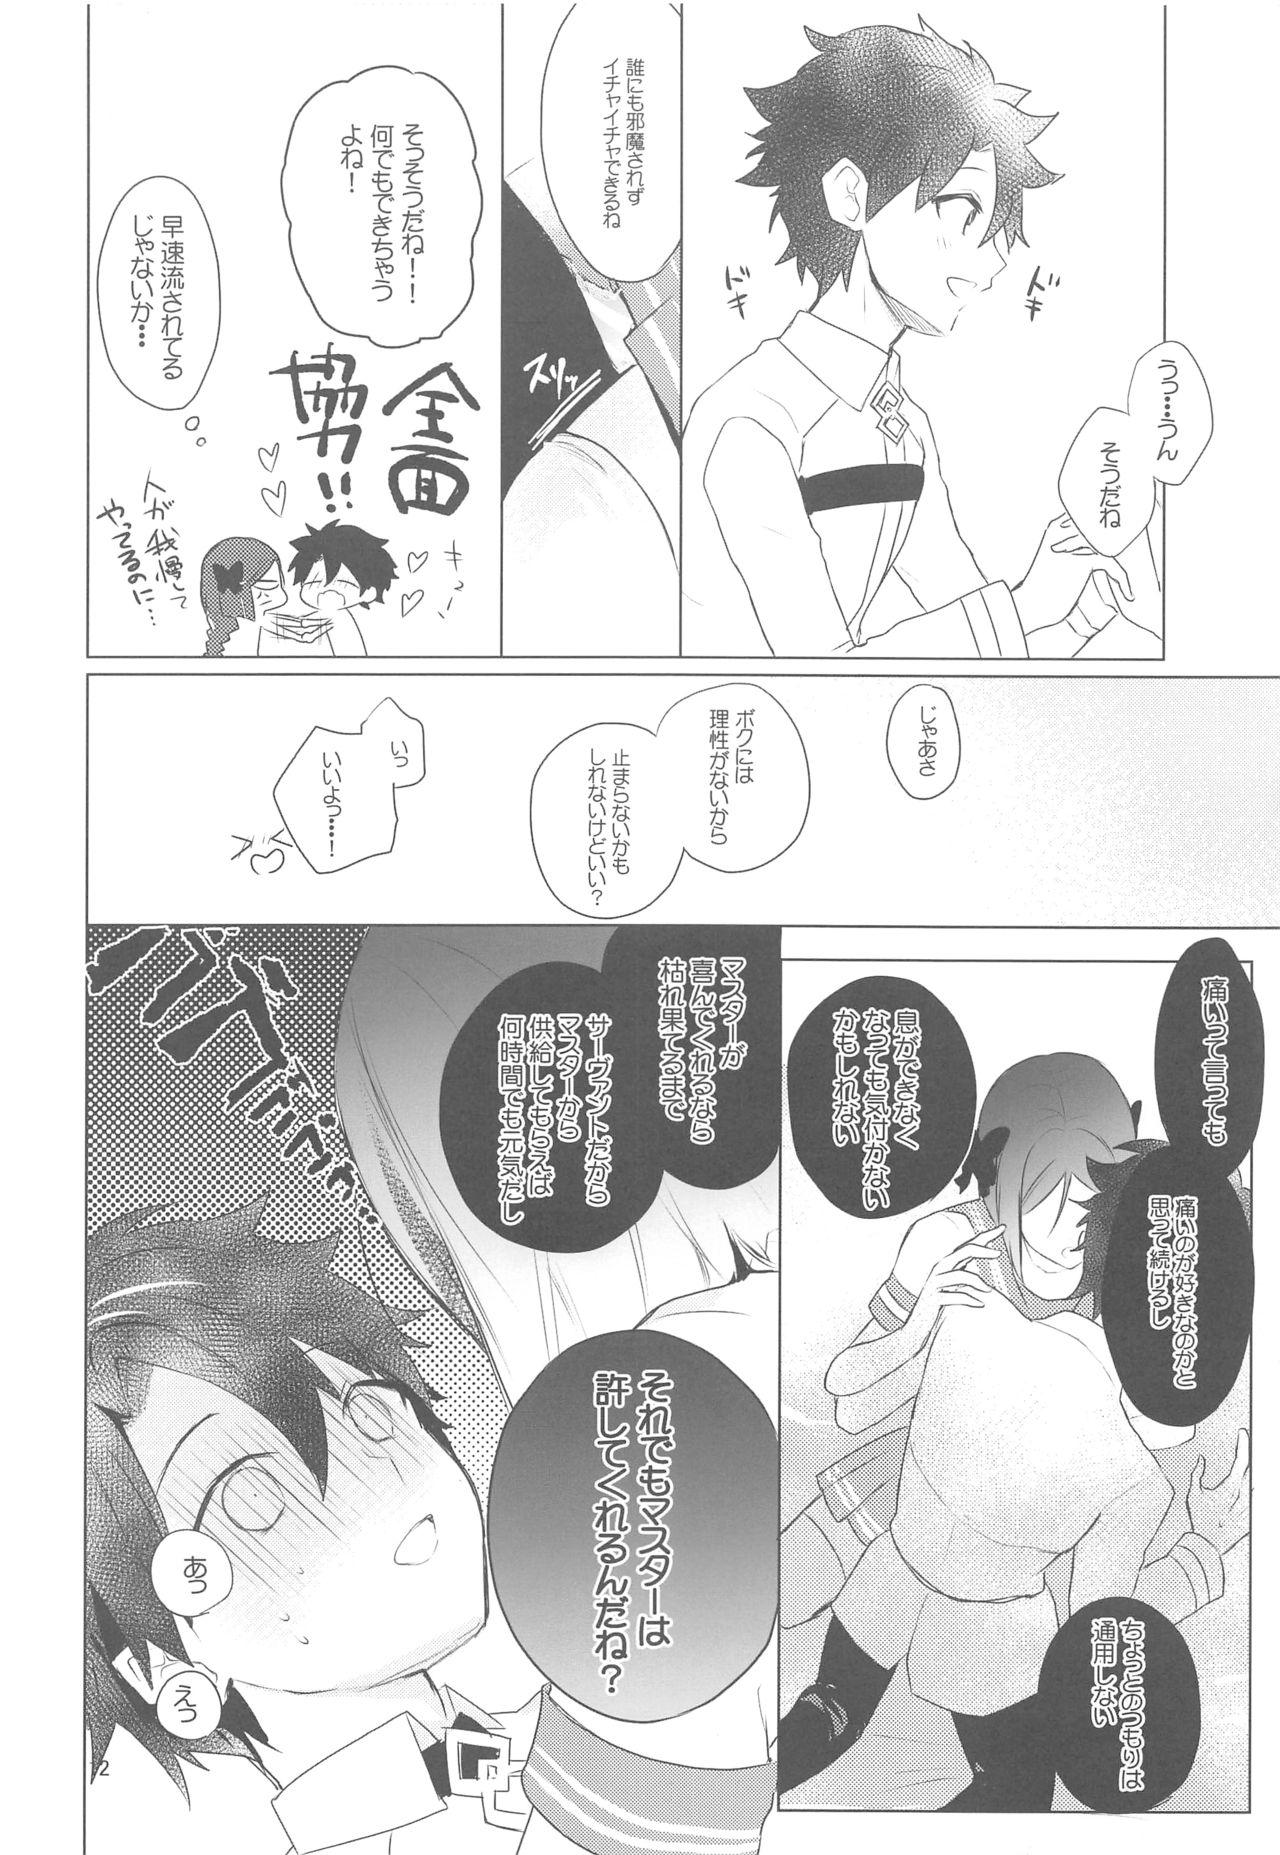 Old Man Hoshi 4 Servant ga Eraberu tte Iukara Kakugo Kimeru Mae ni Waver-chan ni o Aite Shite Moratta Hanashi - Fate grand order Natural - Page 11